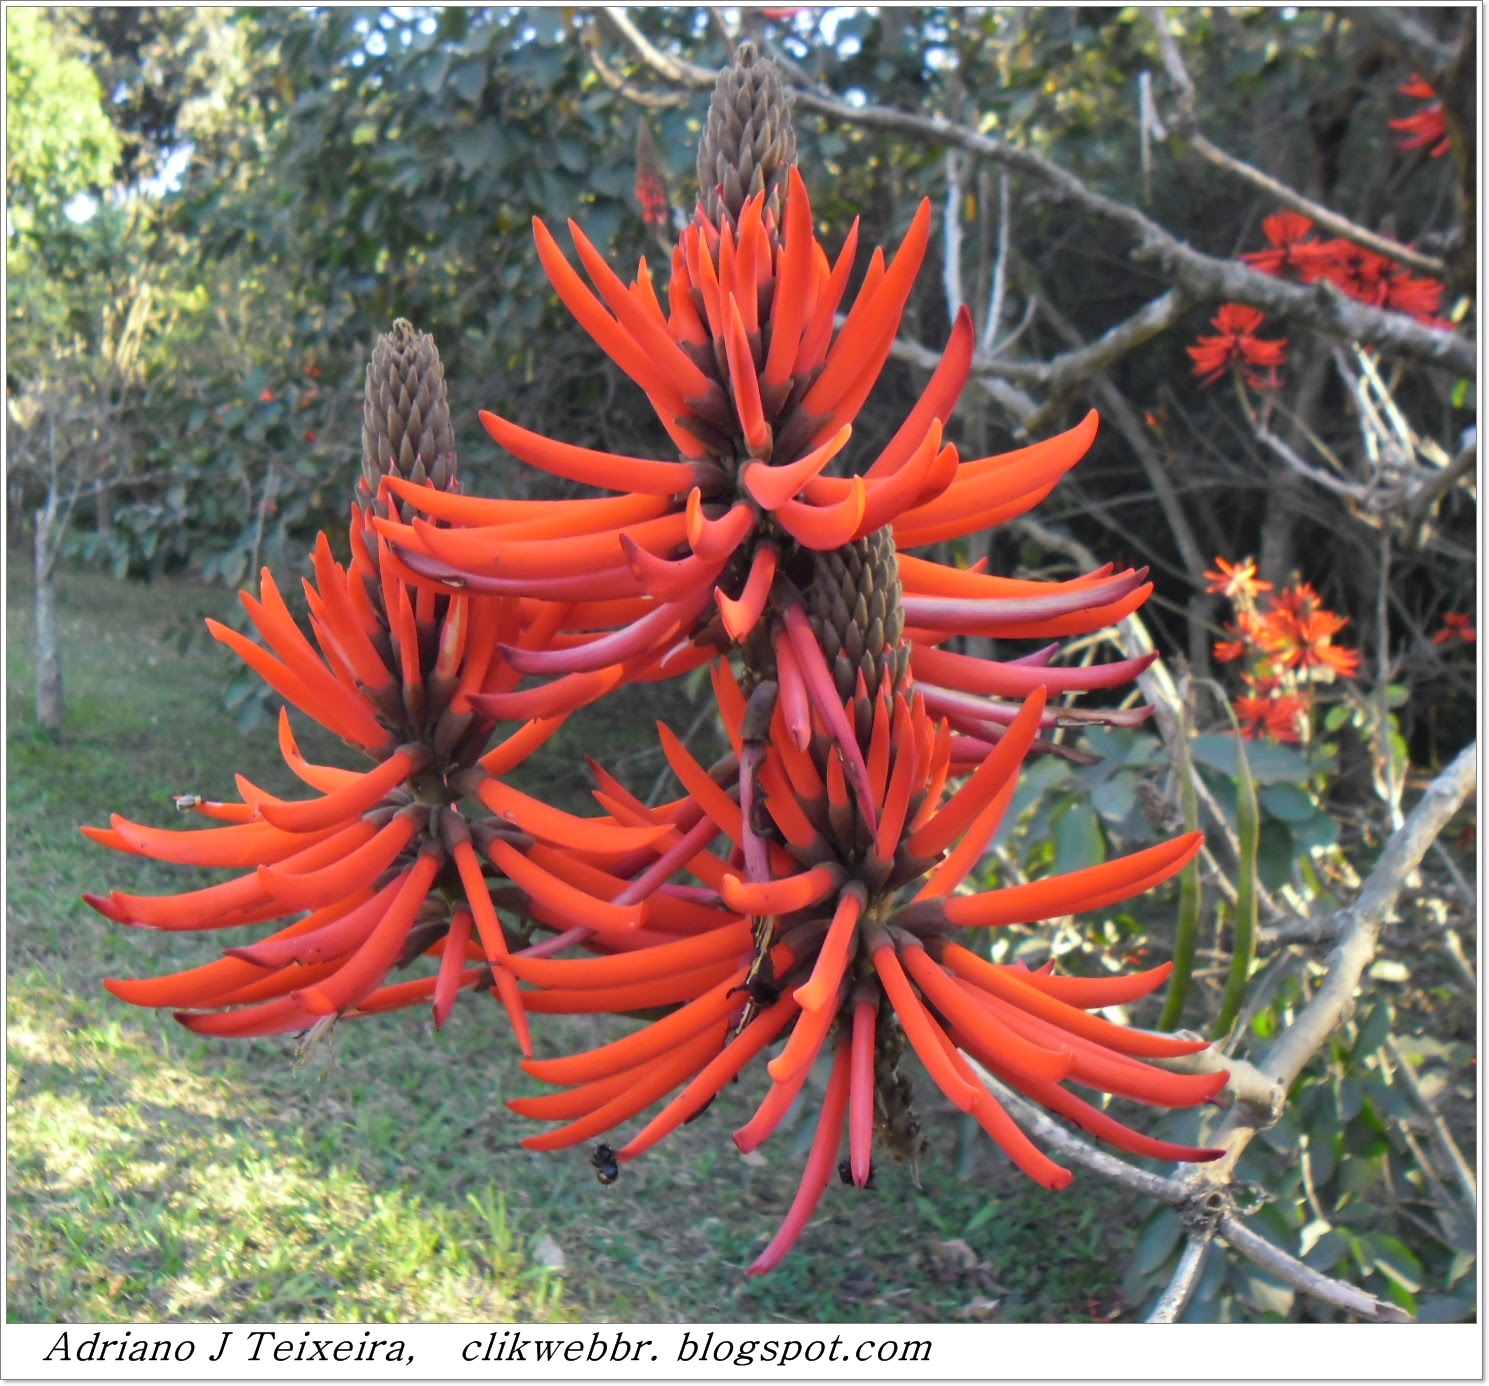 Flores Brasileiras Nomes E Imagens - Consulta de Plantas Ornamentais Flores Cultivando com br